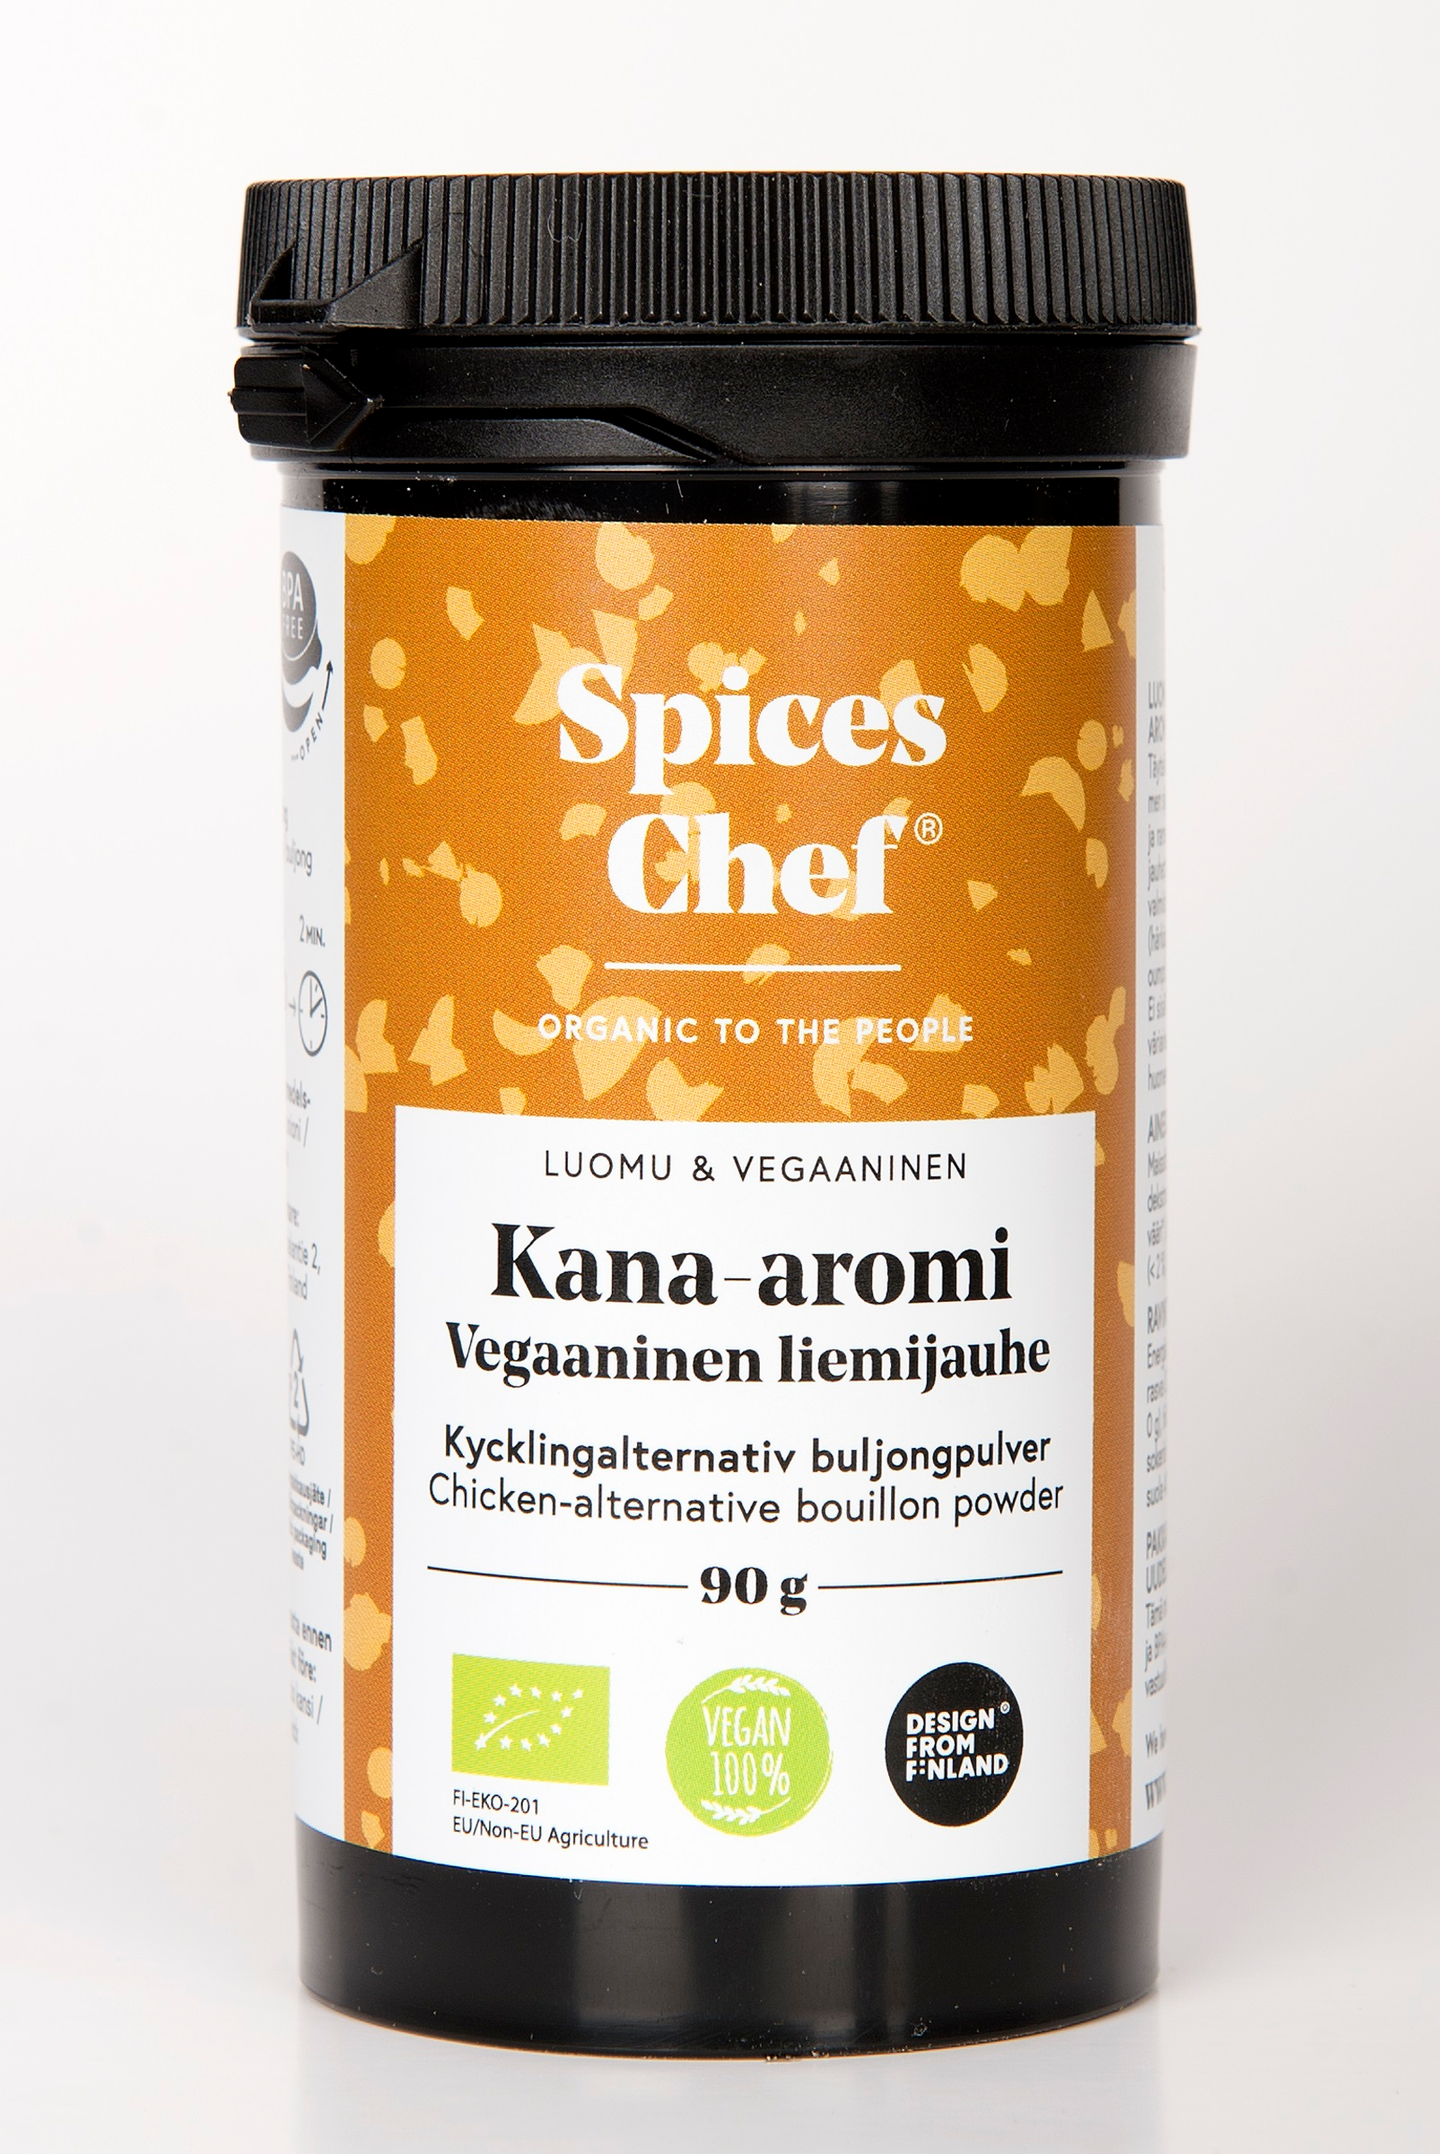 Spices Chef luomu Kana-aromi vegaaninen liemijauhe 90g  BPA-vapaassa biomuovi maustepurkissa.